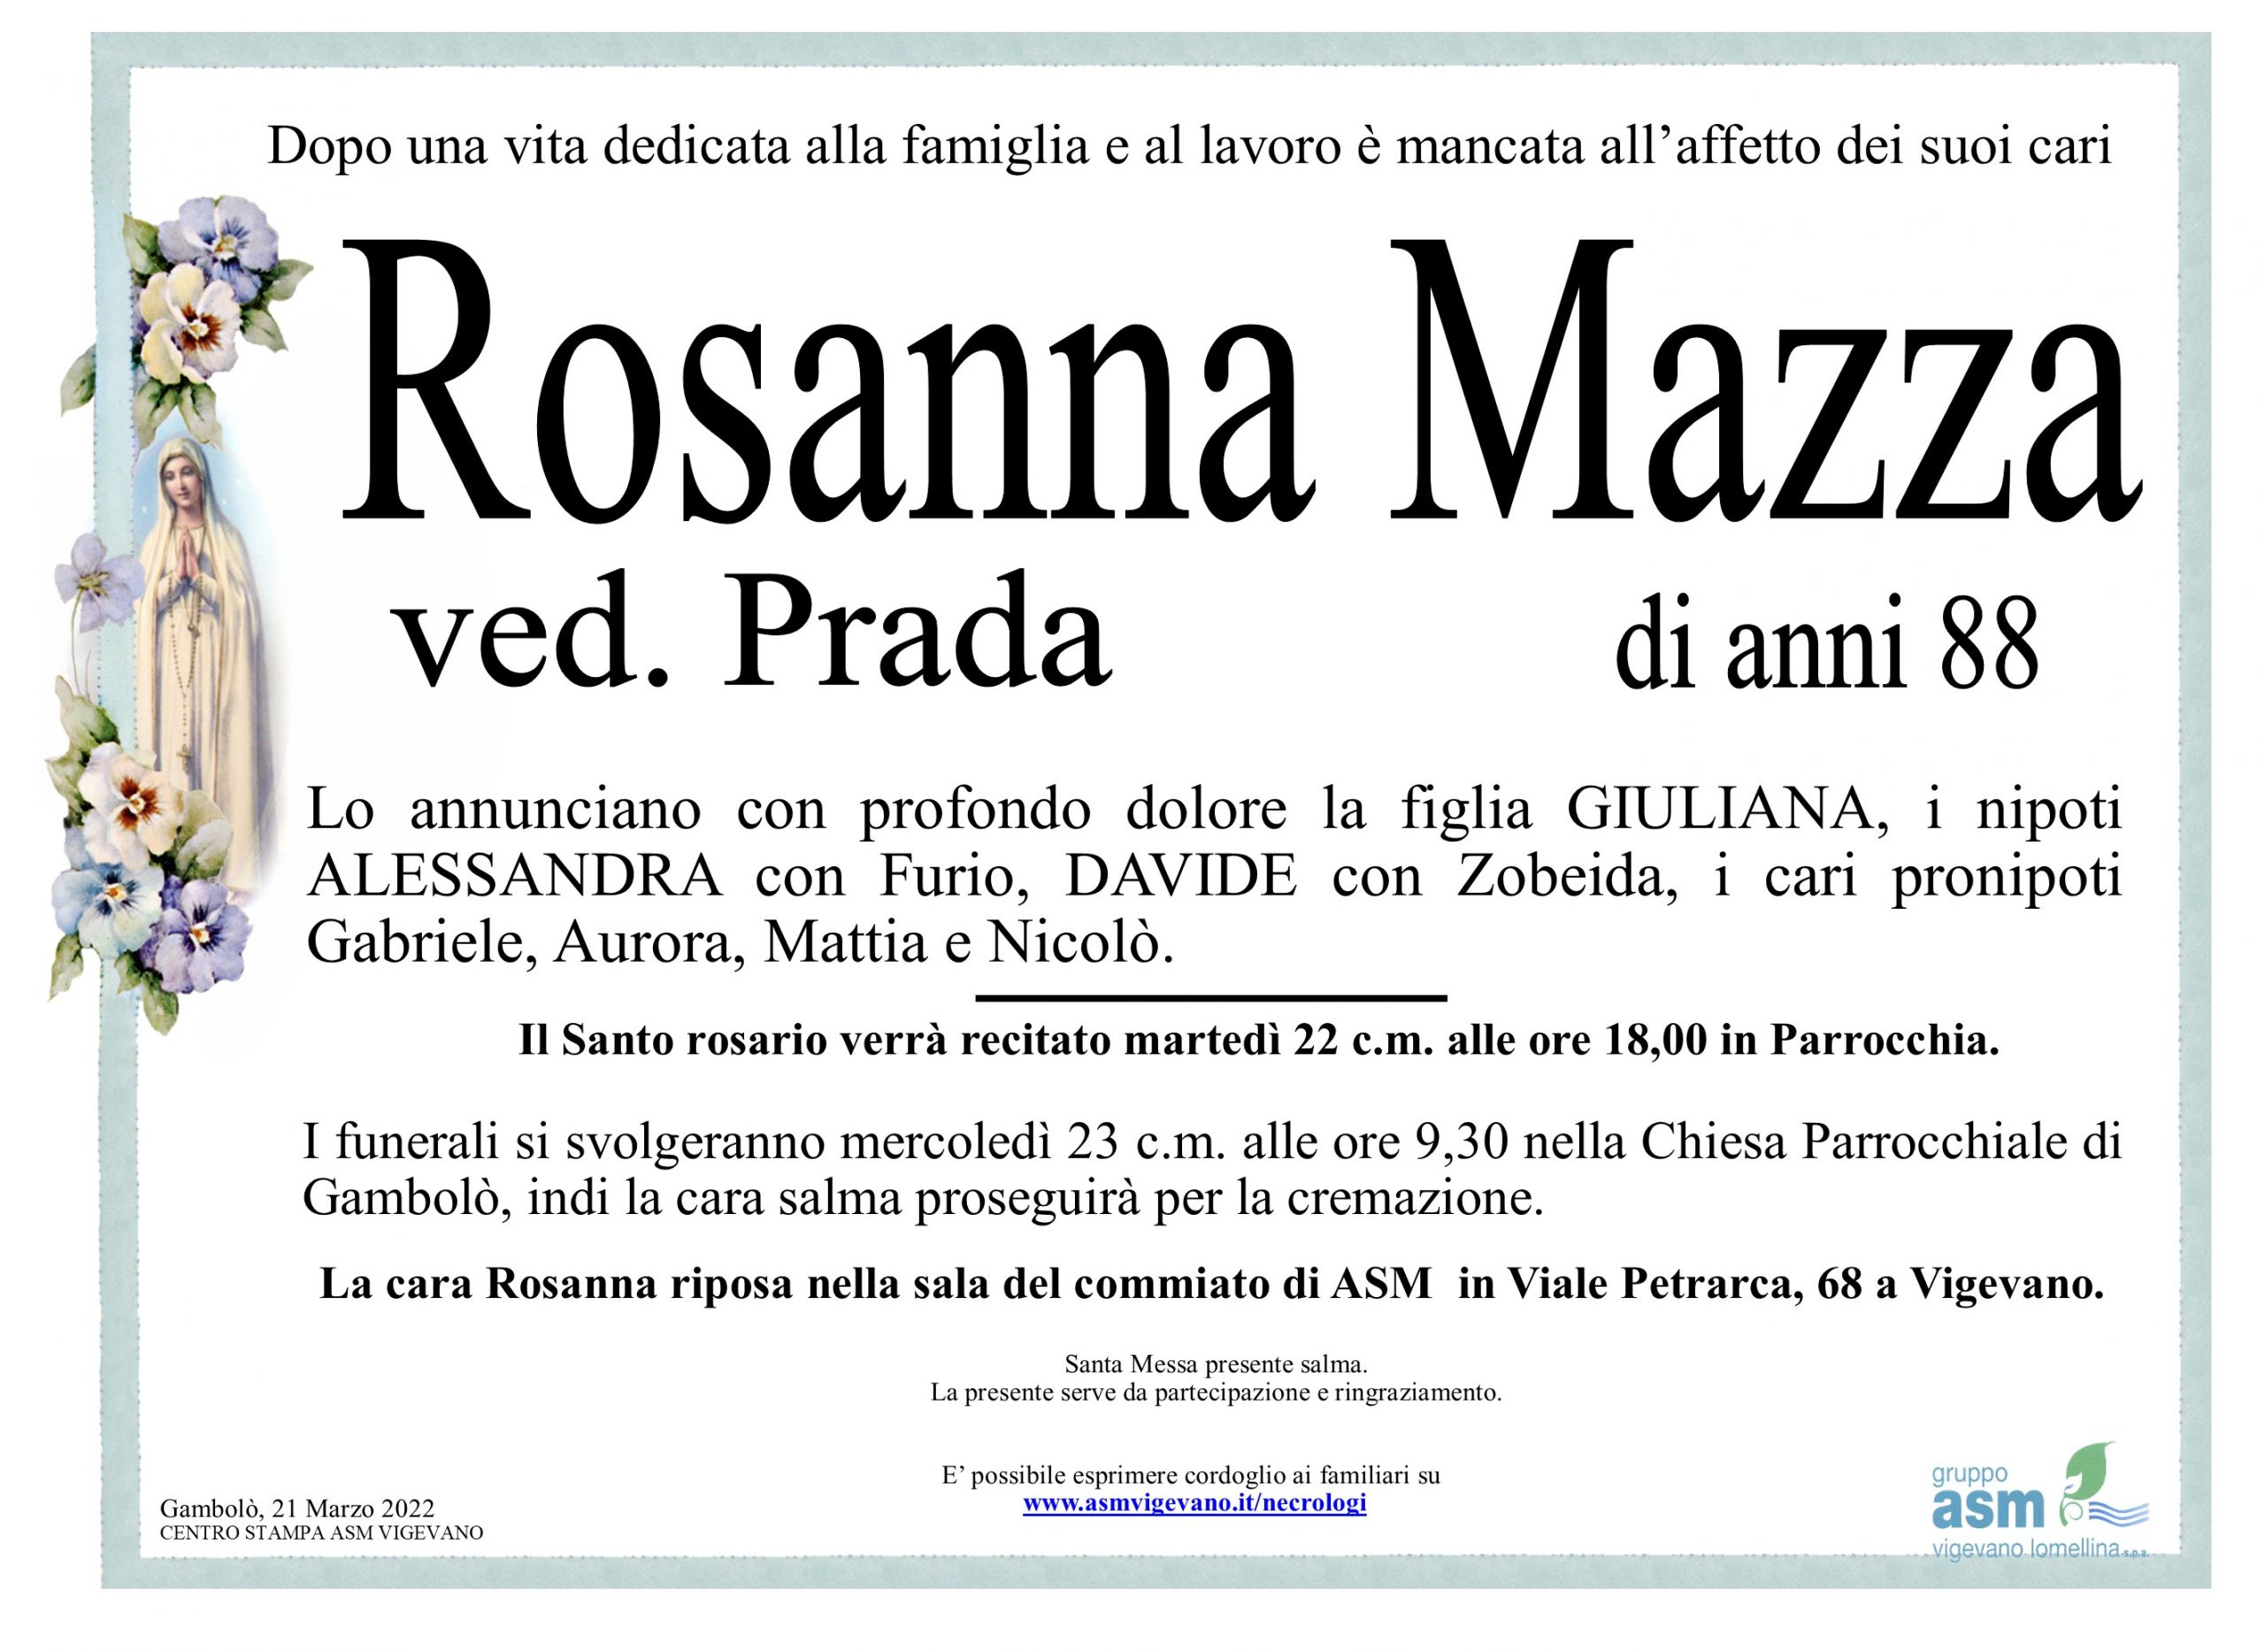 Rosanna Mazza